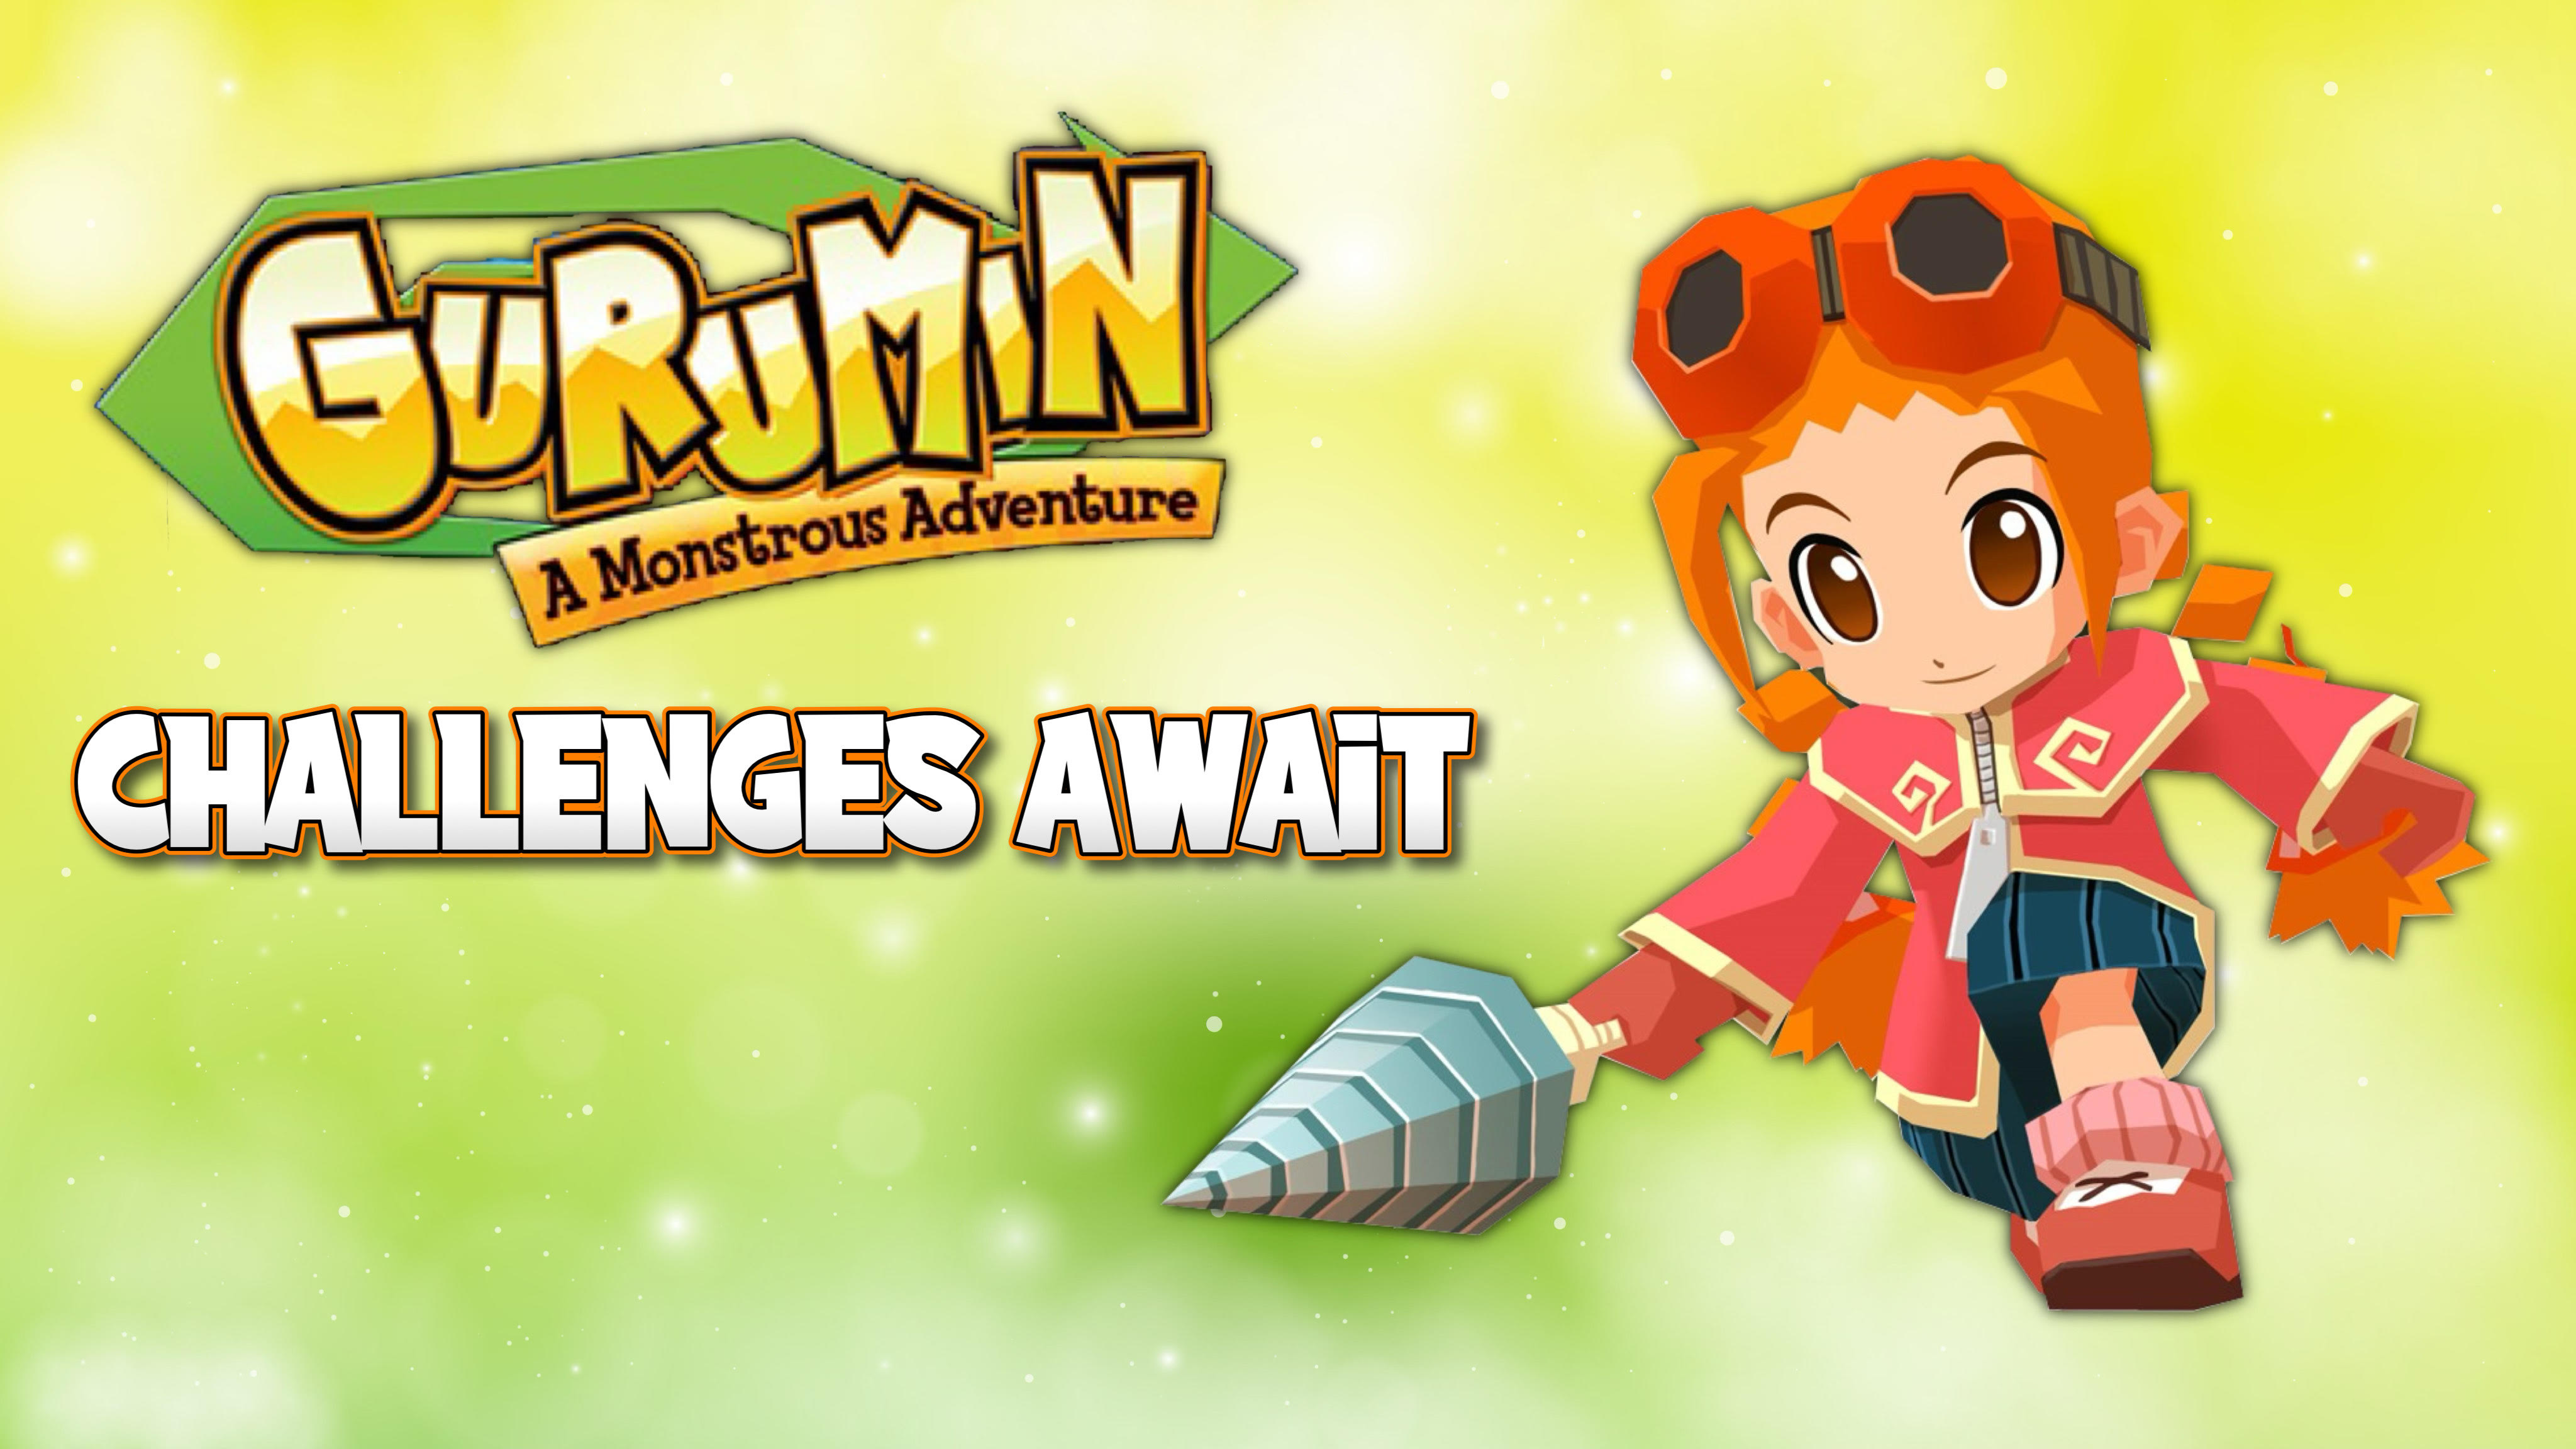 Gurumin: A Monstrous Adventure - Challenges Await (Part 2)